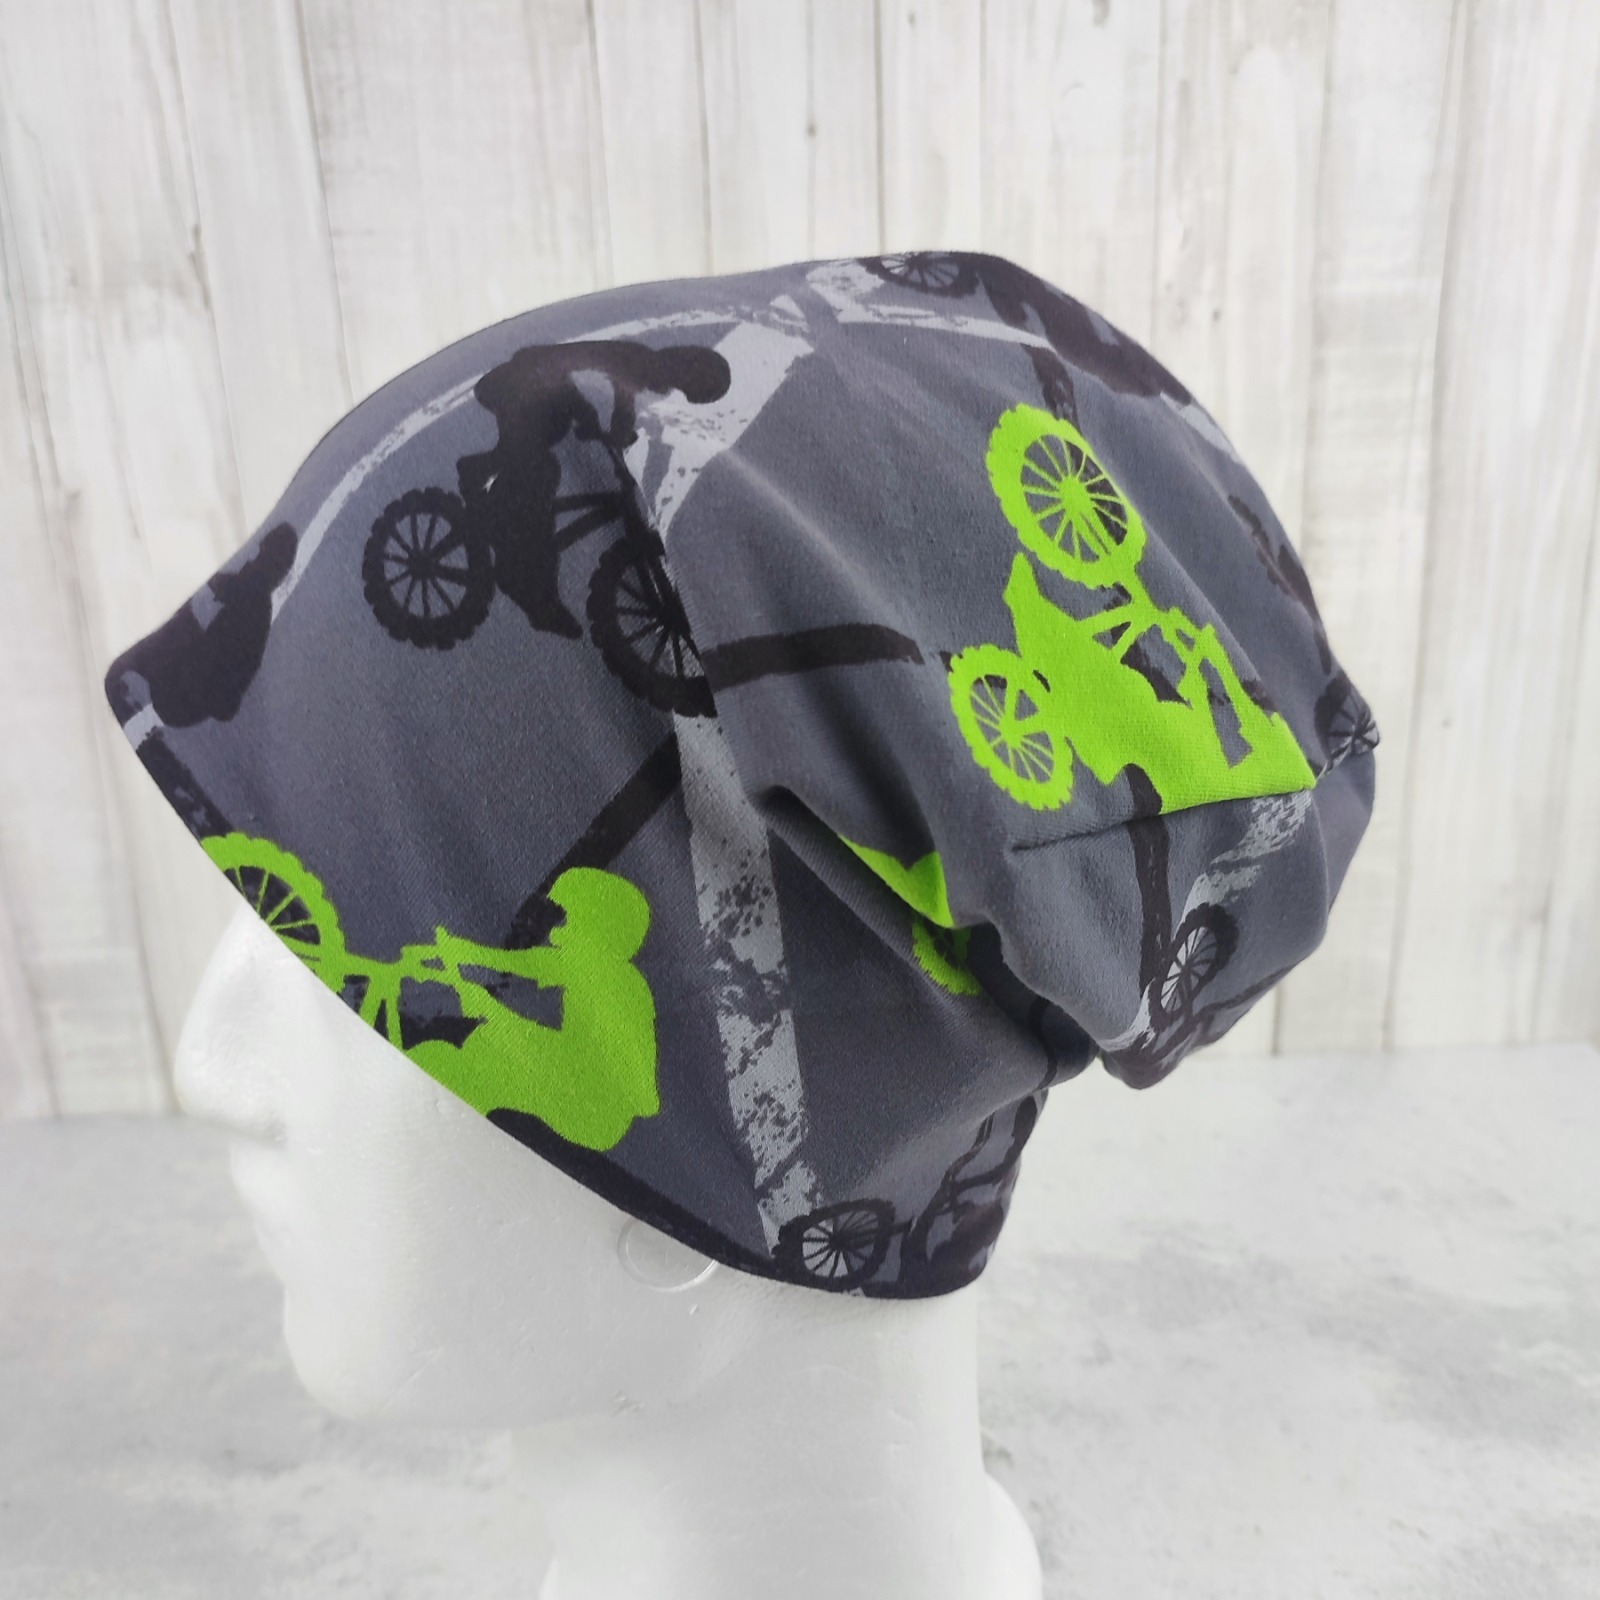 Beanie für Erwachsene und Teenager - BMX Fahrrad grau apfelgrün - Kopfumfang ca. 54 - 58 cm 7